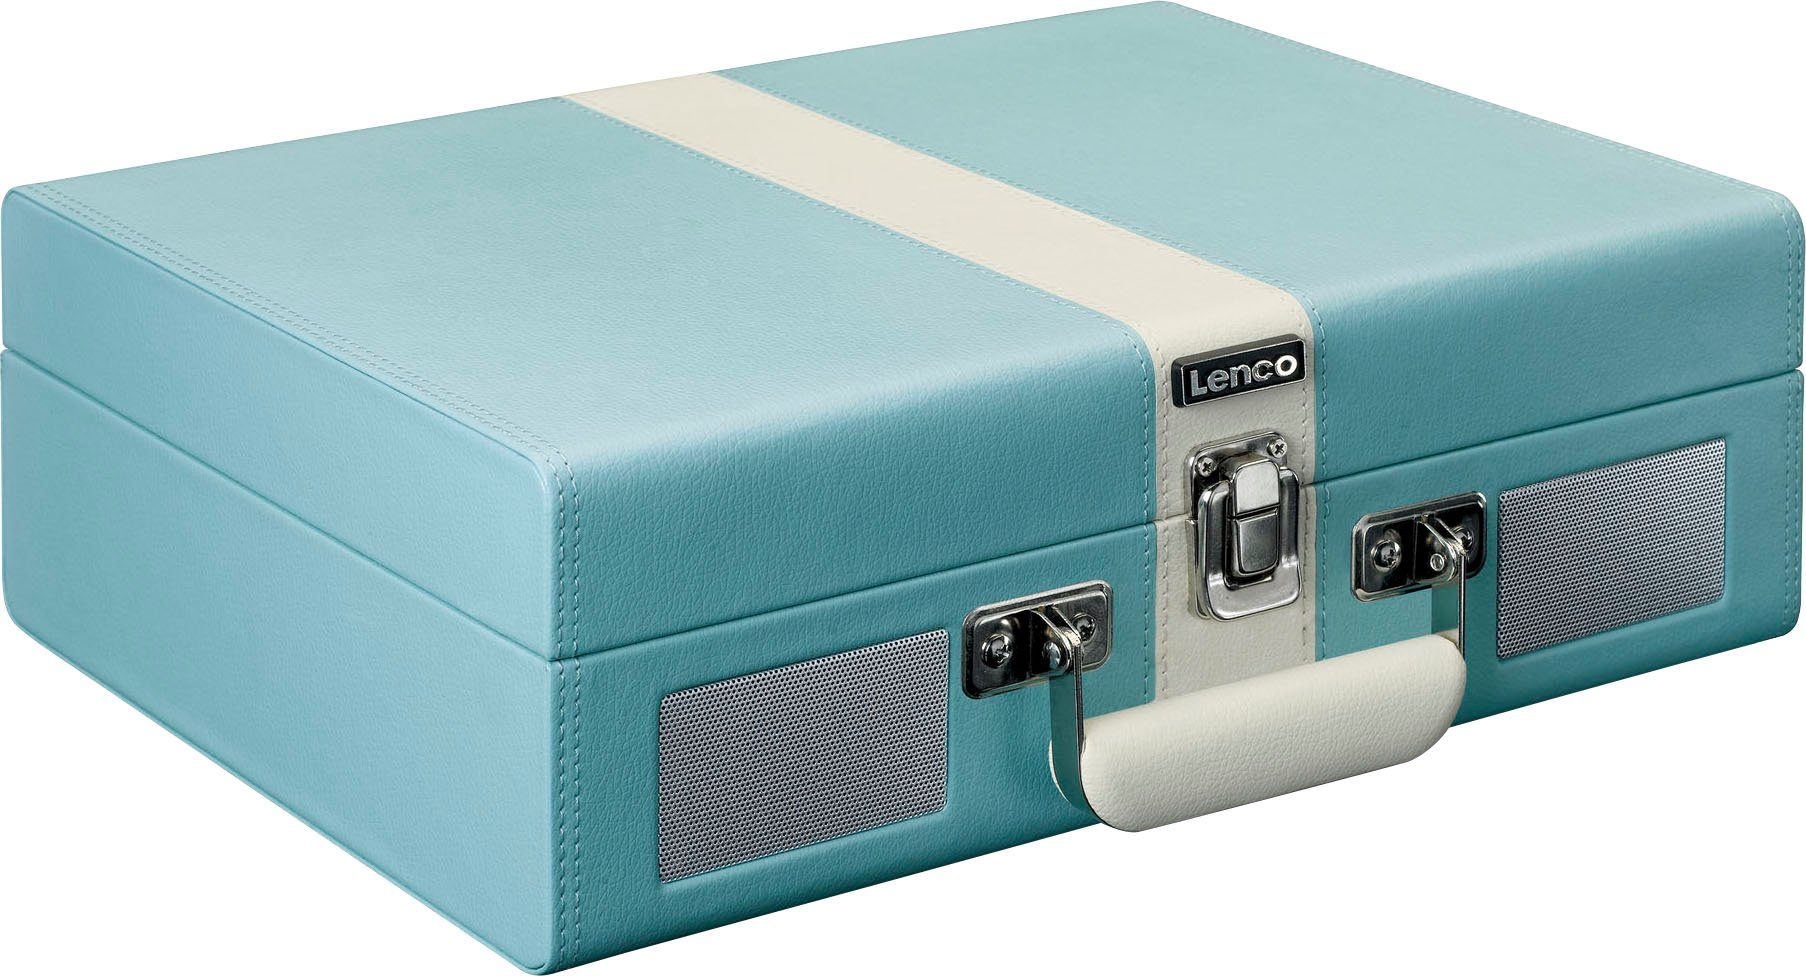 Lenco Koffer-Plattenspieler mit BT und eingebauten Lsp. Plattenspieler (Riemenantrieb) Blau-Weiß